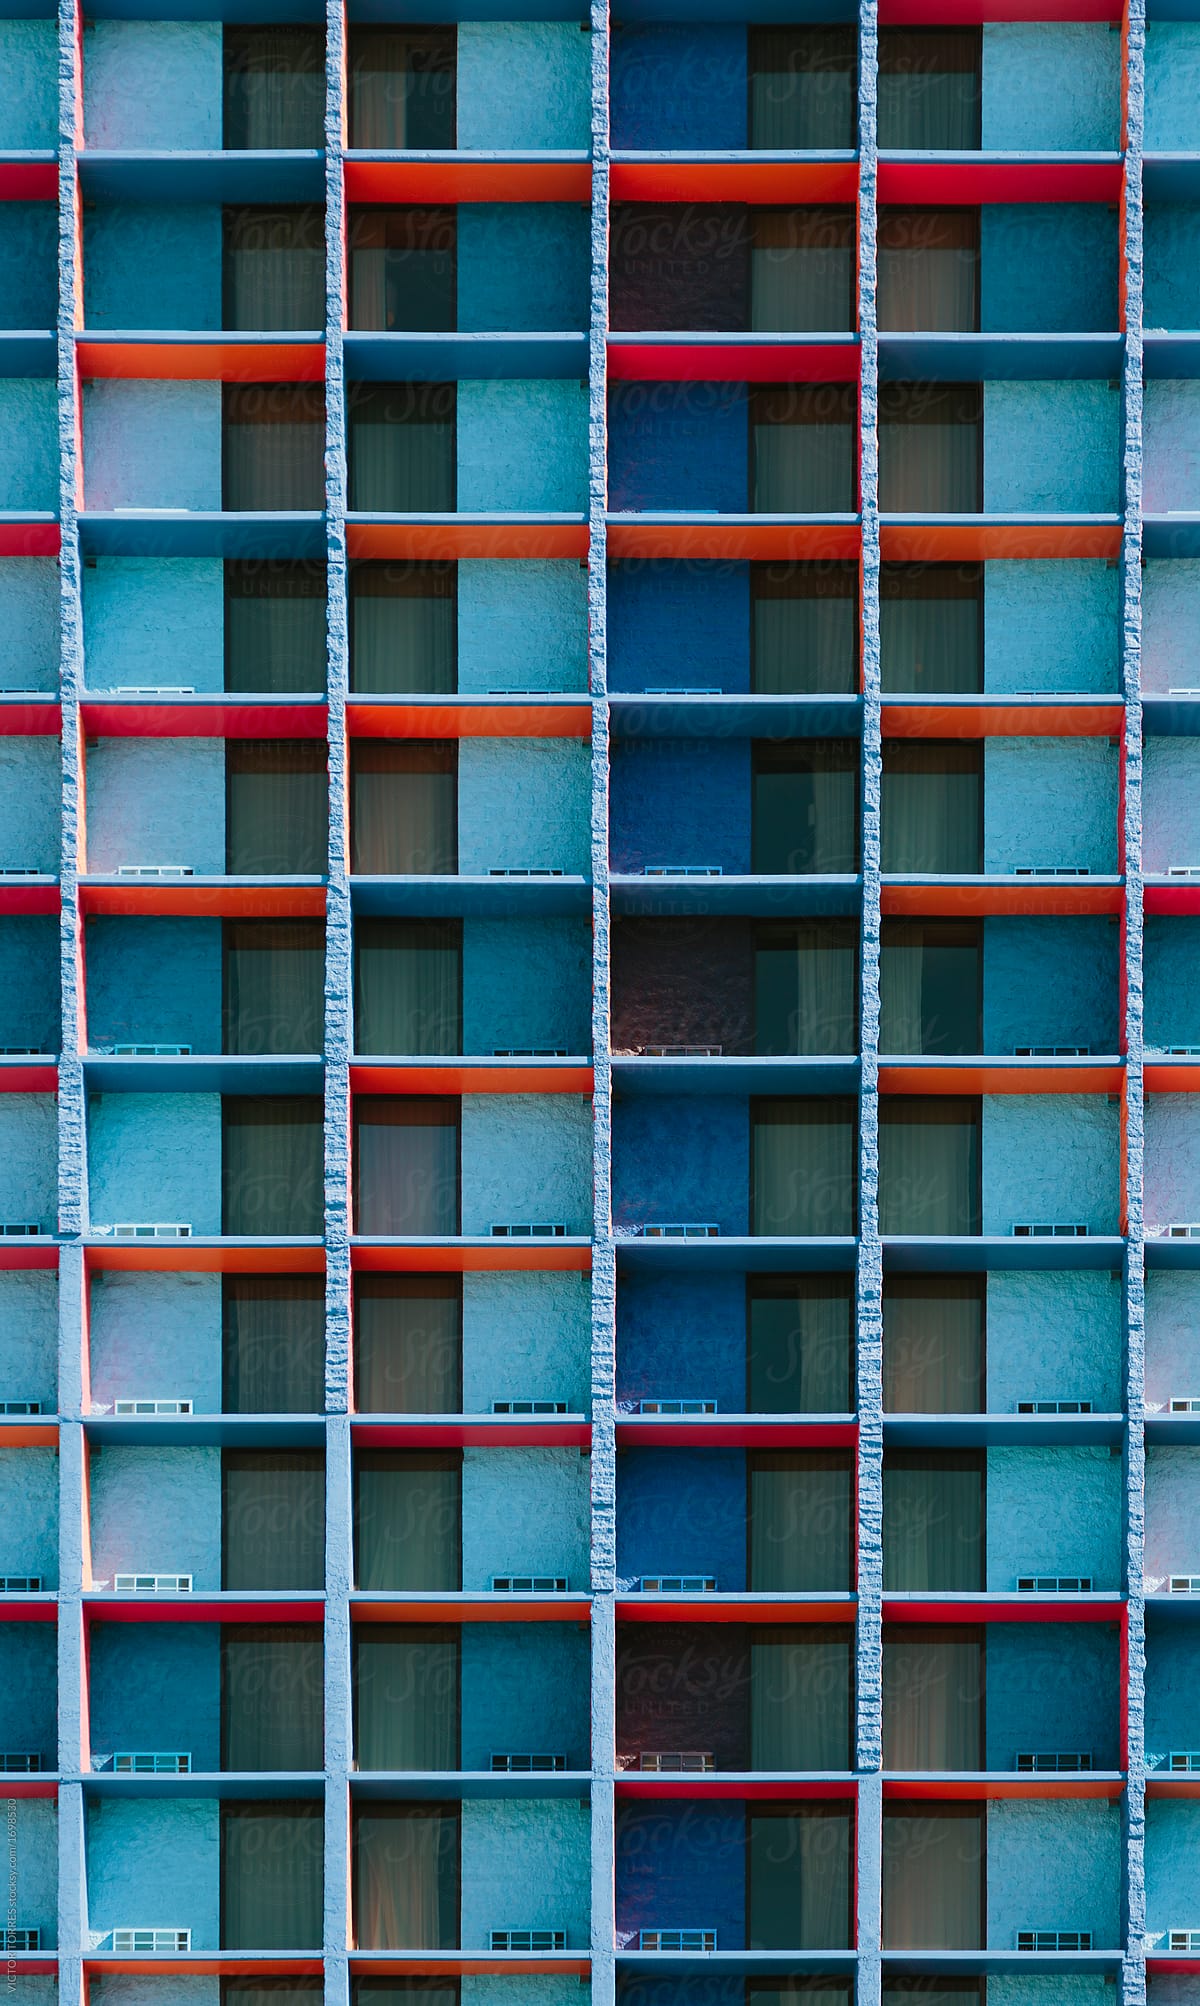 Modular colorful facade background